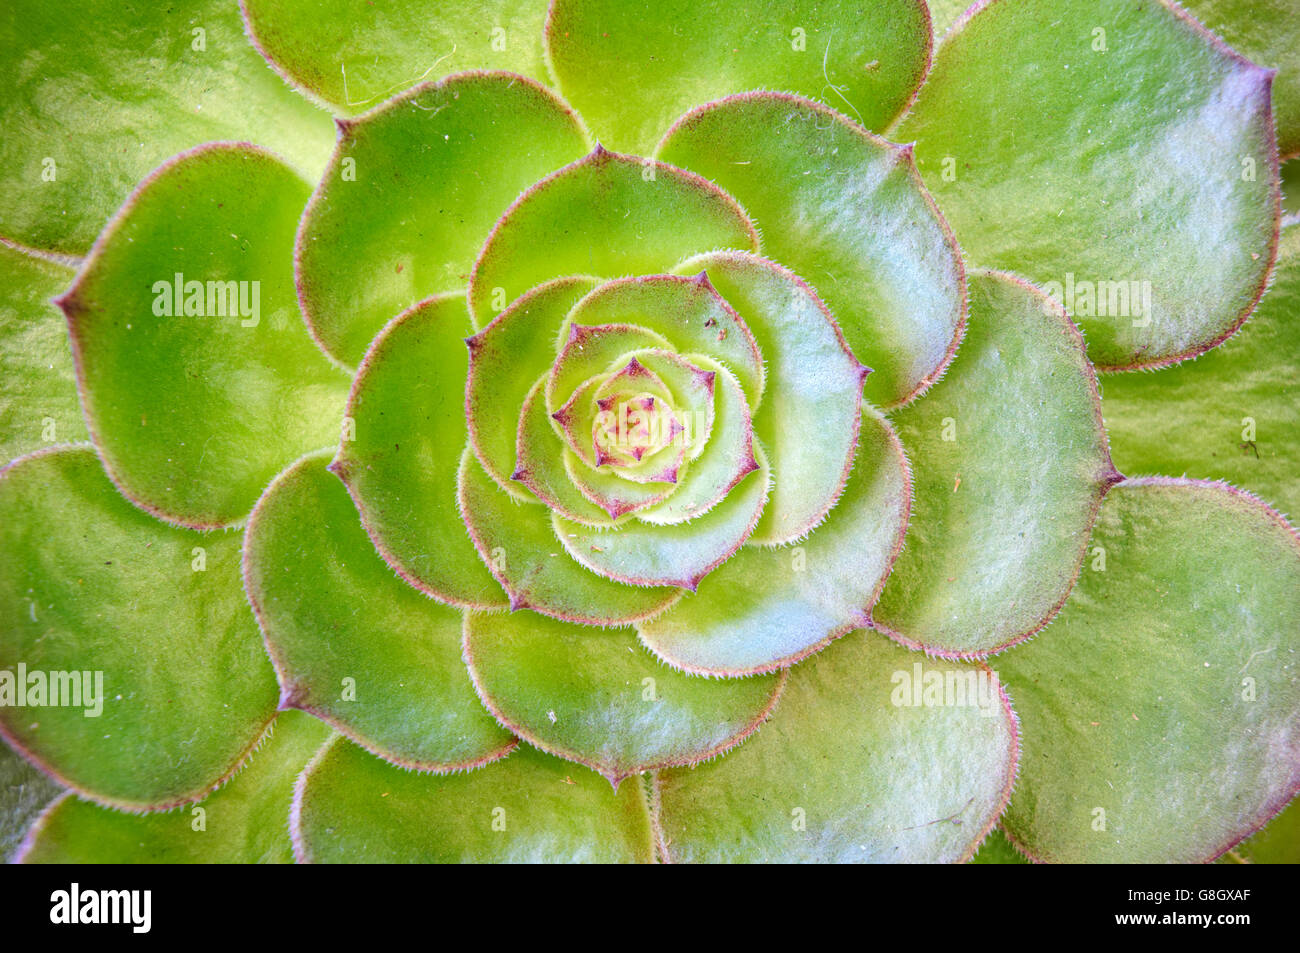 Nahaufnahme einer grünen saftigen Hühner- und Kükenpflanze (sempervivum) mit radialen Blättern Stockfoto